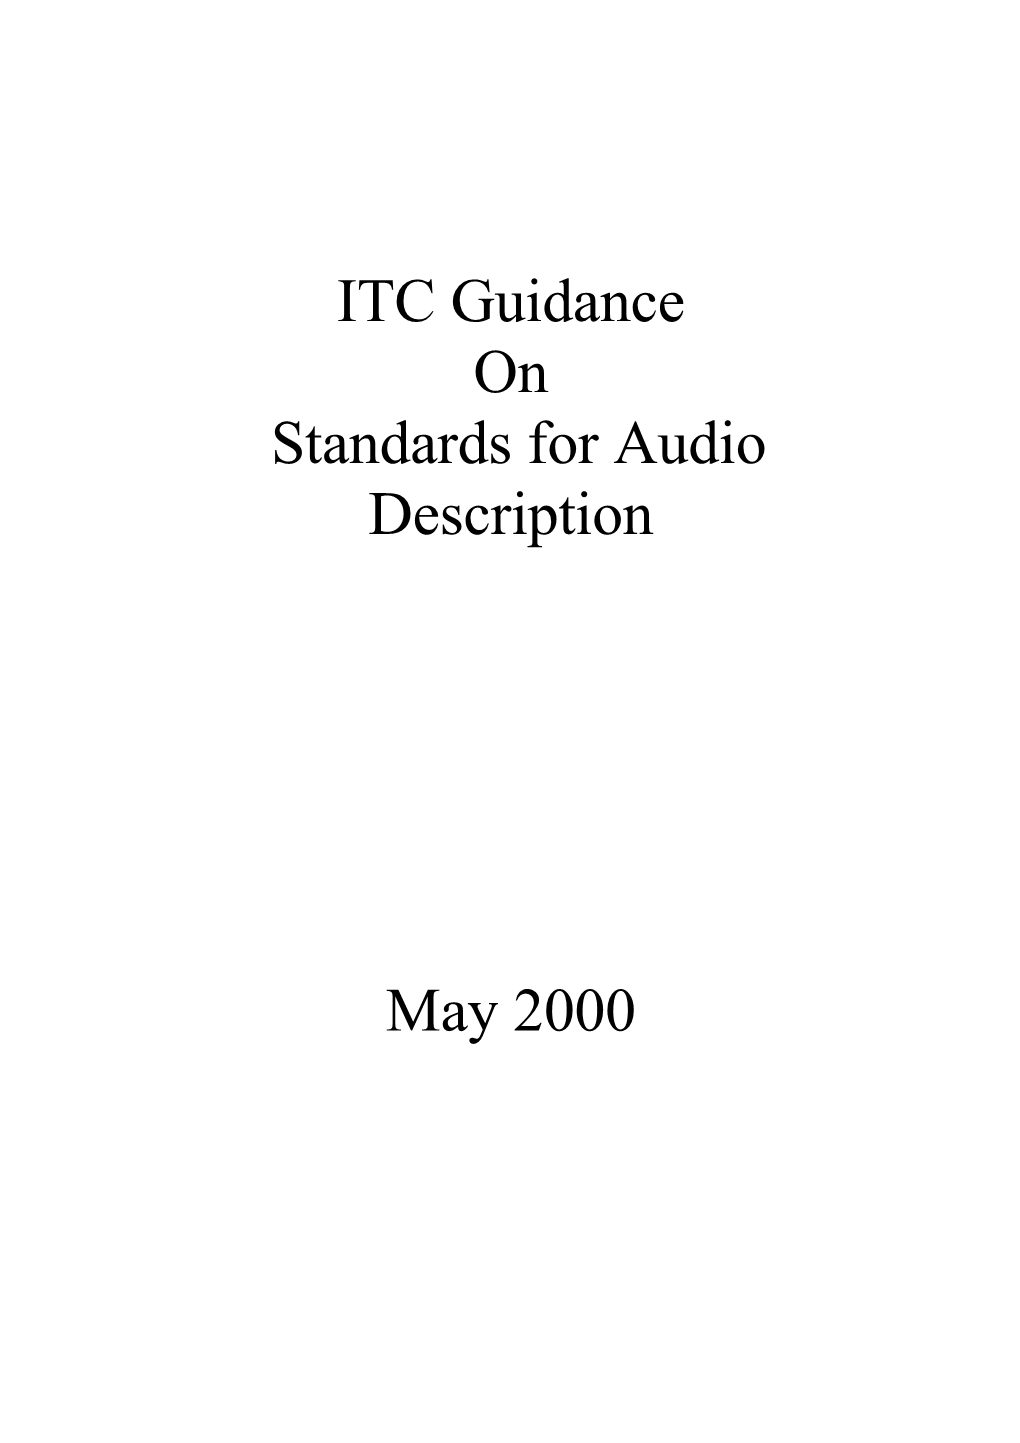 Standards for Audio Description